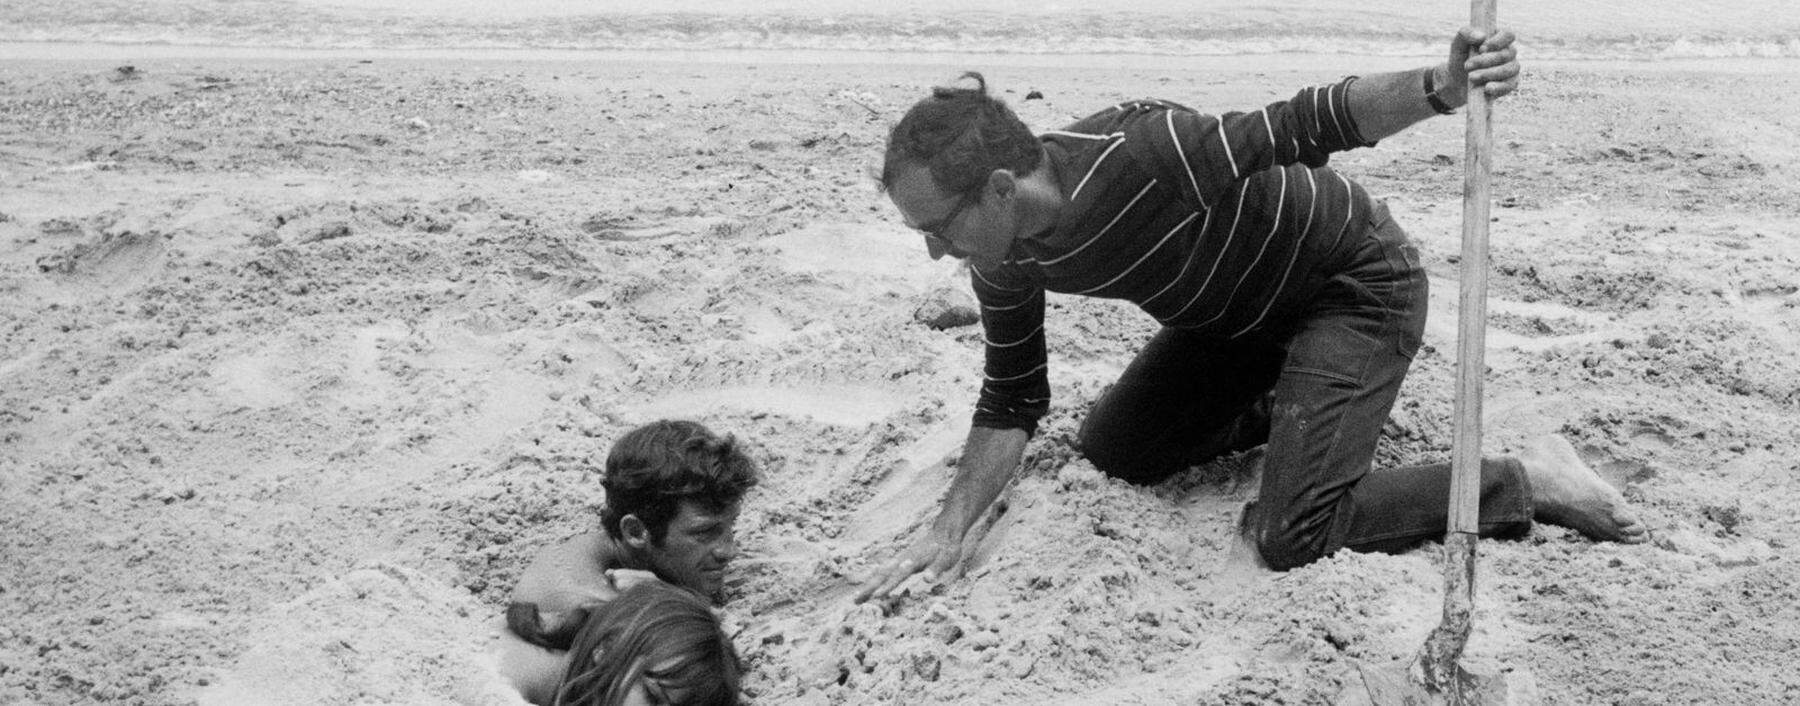 Jean-Luc Godard, wie er bei den Dreharbeiten von „Pierrot le Fou“ („Elf Uhr nachts“, erschienen 1965) seine Darsteller Anna Karina und Jean-Paul Belmondo eingräbt.